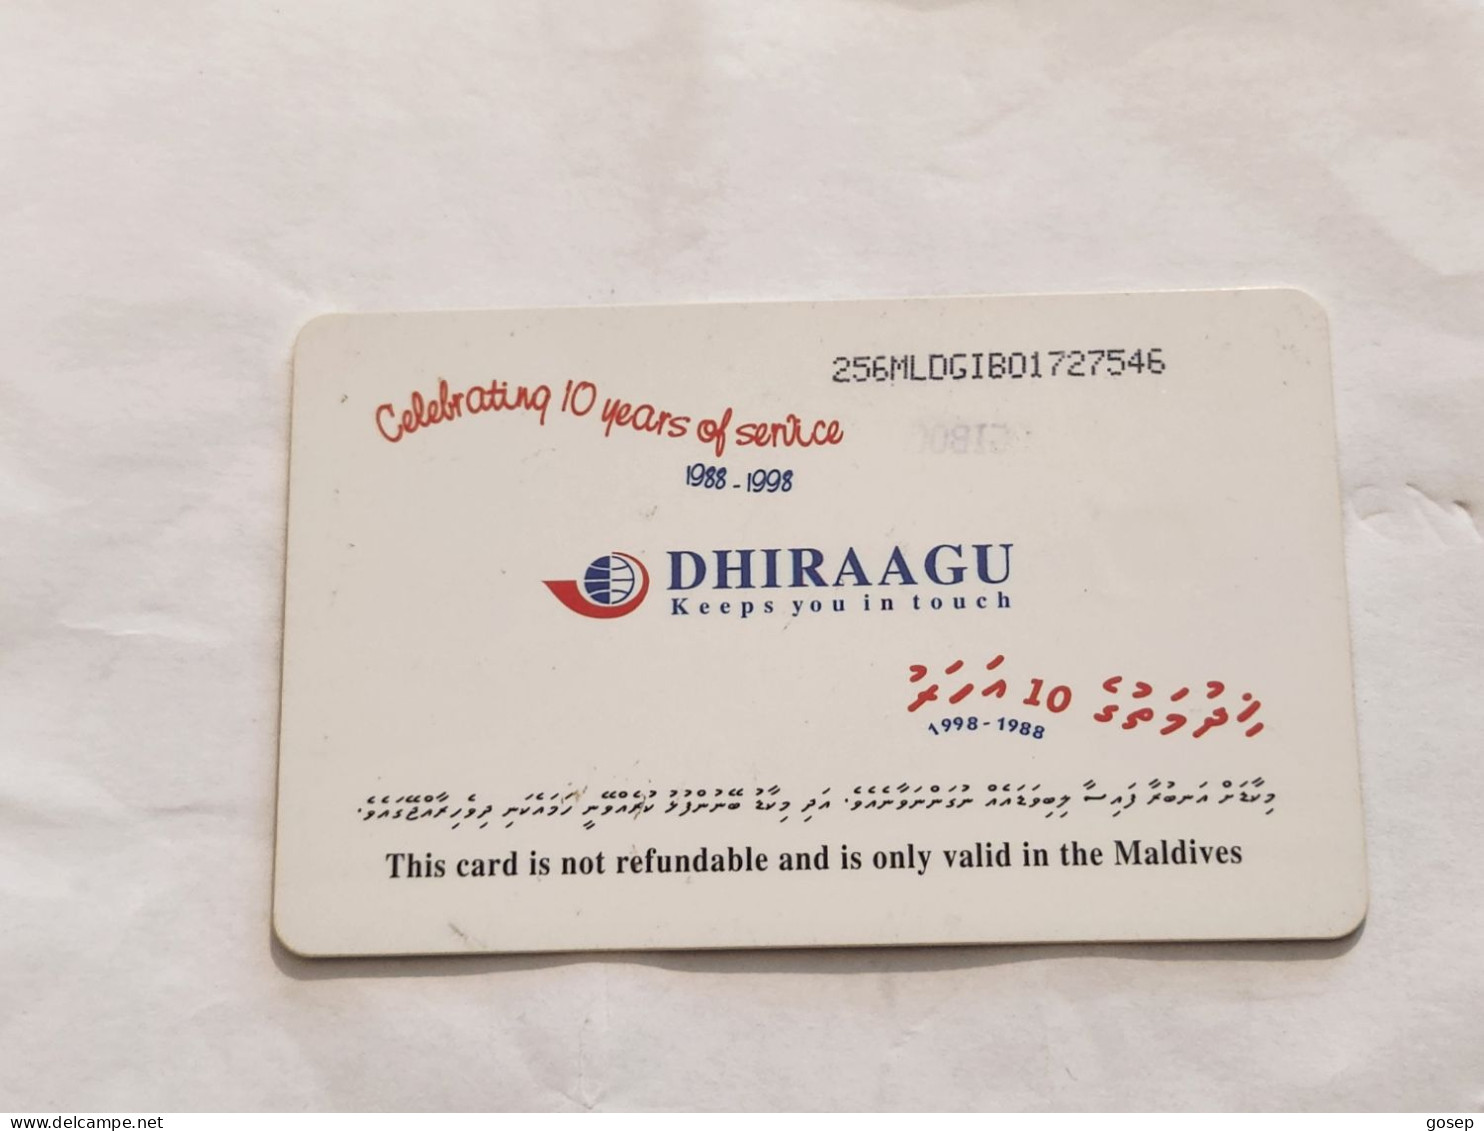 Maldives-(256MLDGIB-MAL-C-01)-save The Turtle-(44)-(RF30)-(256MLDGIB01727546)-used Card+1card Prepiad Free - Maldive